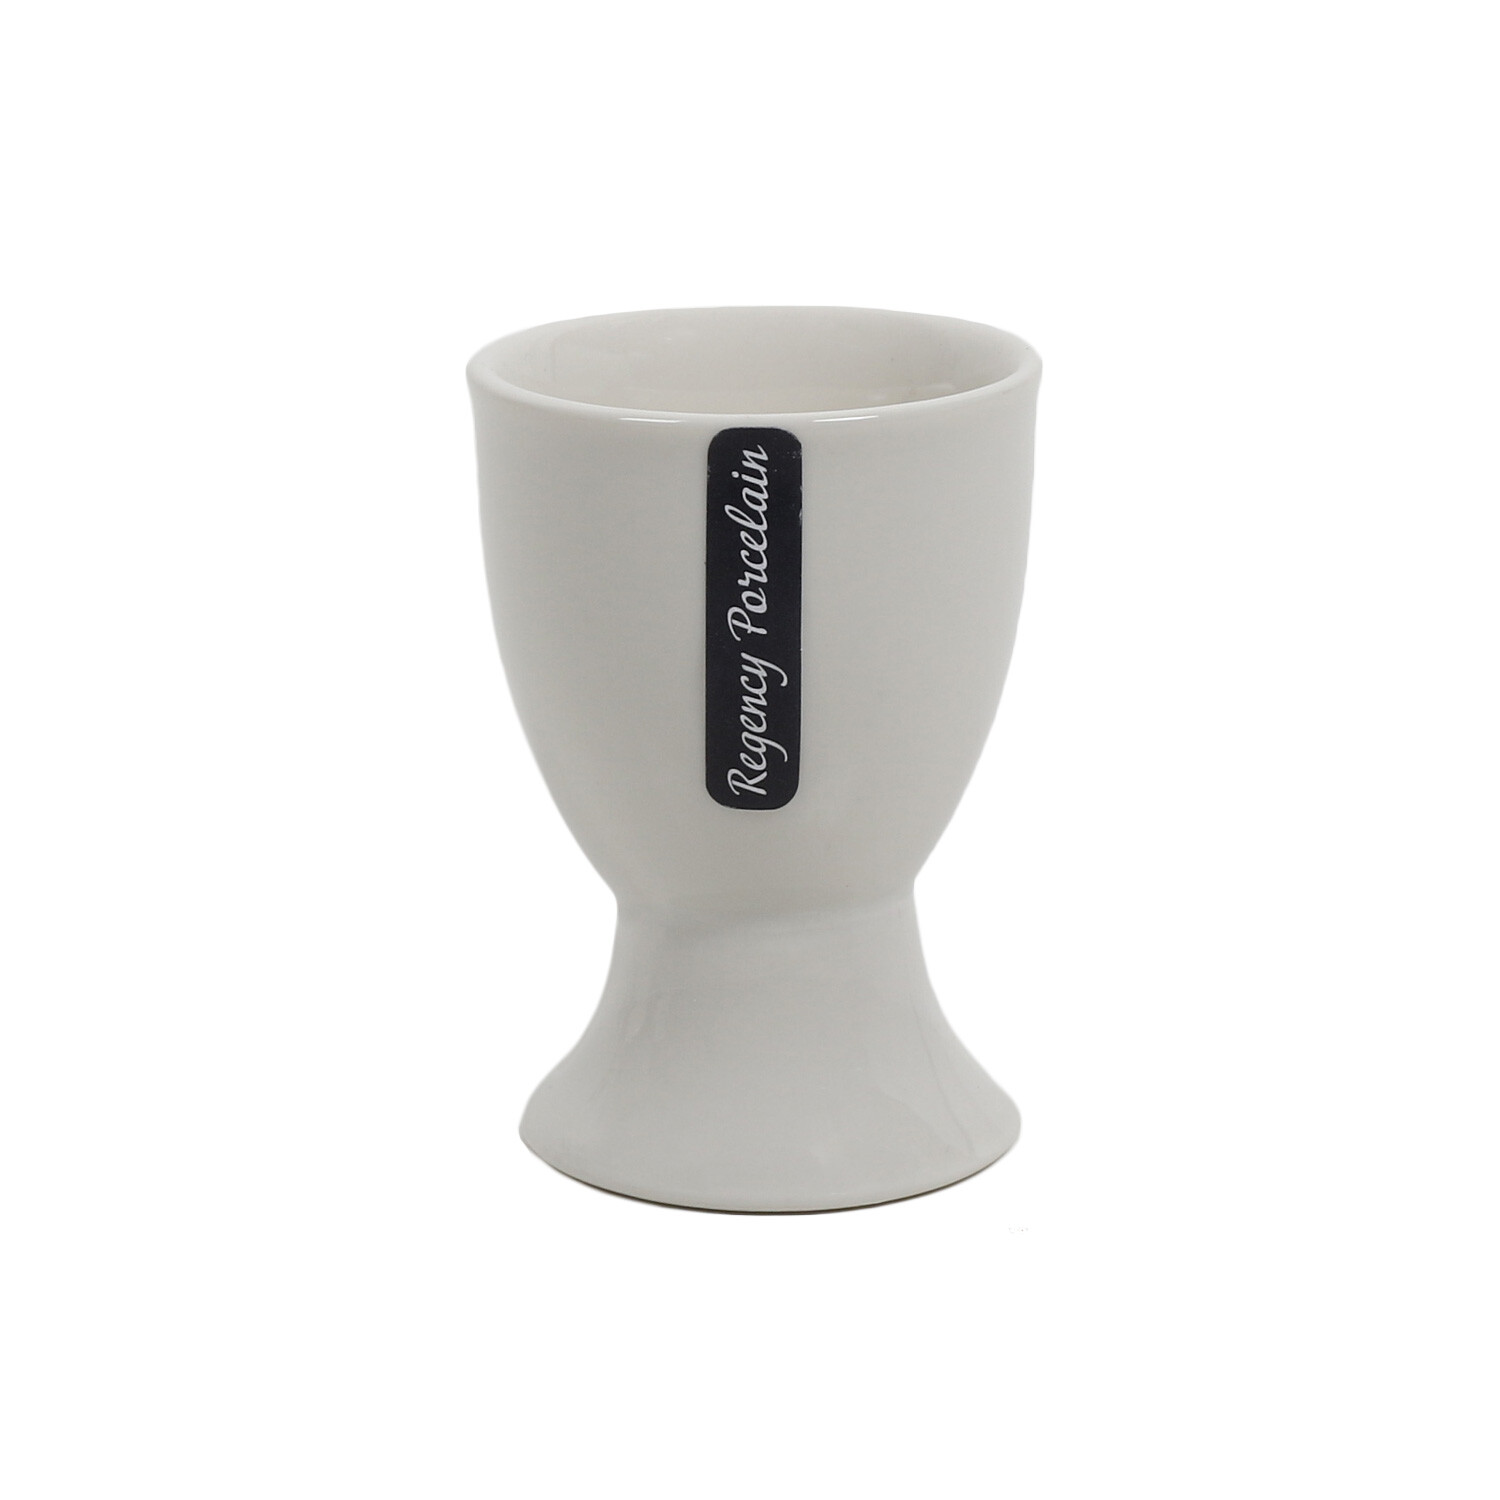 Set of 4 Regency Porcelain Egg Cups - White Image